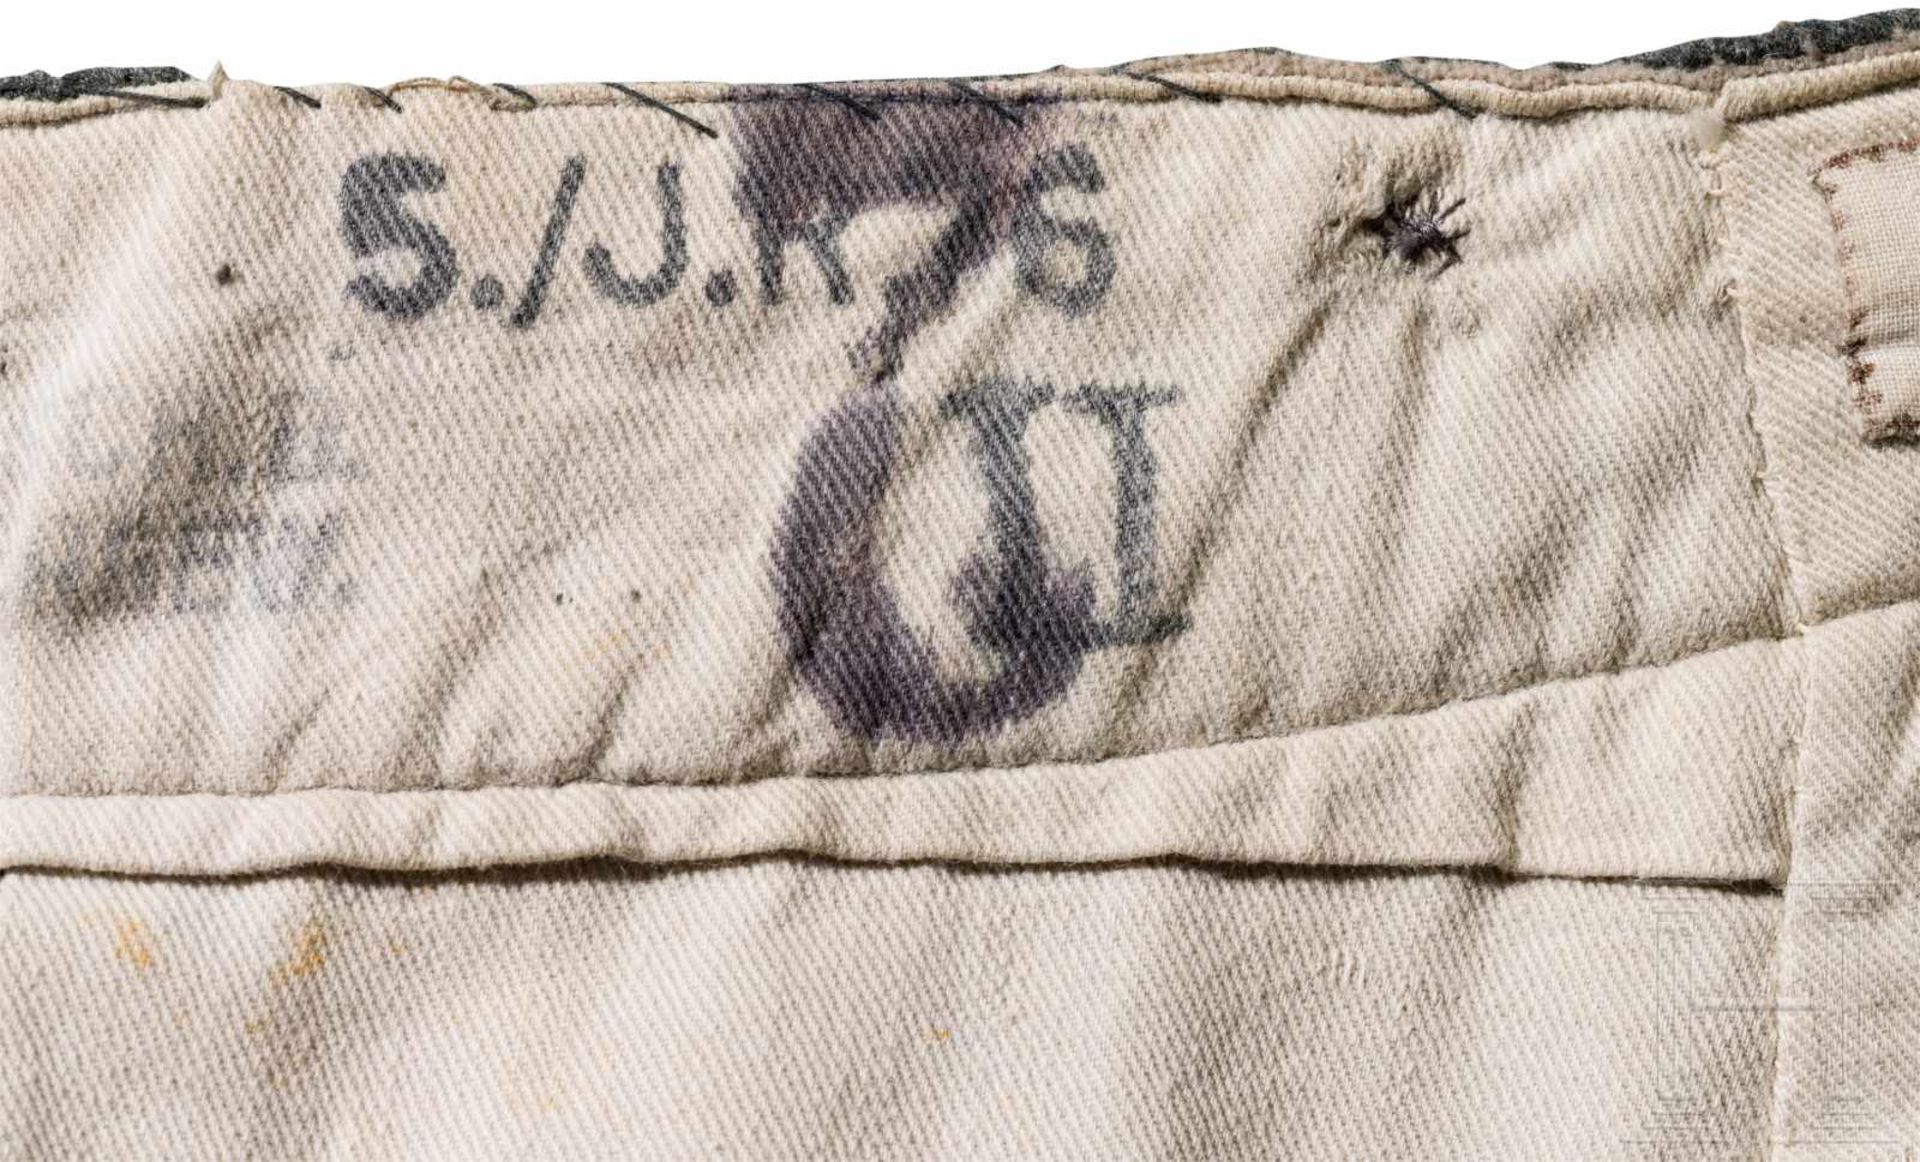 Feldhose M 1914 für Mannschaften/UnteroffiziereKammerstück aus steingrauem Wollstoff mit Horn- - Bild 4 aus 5